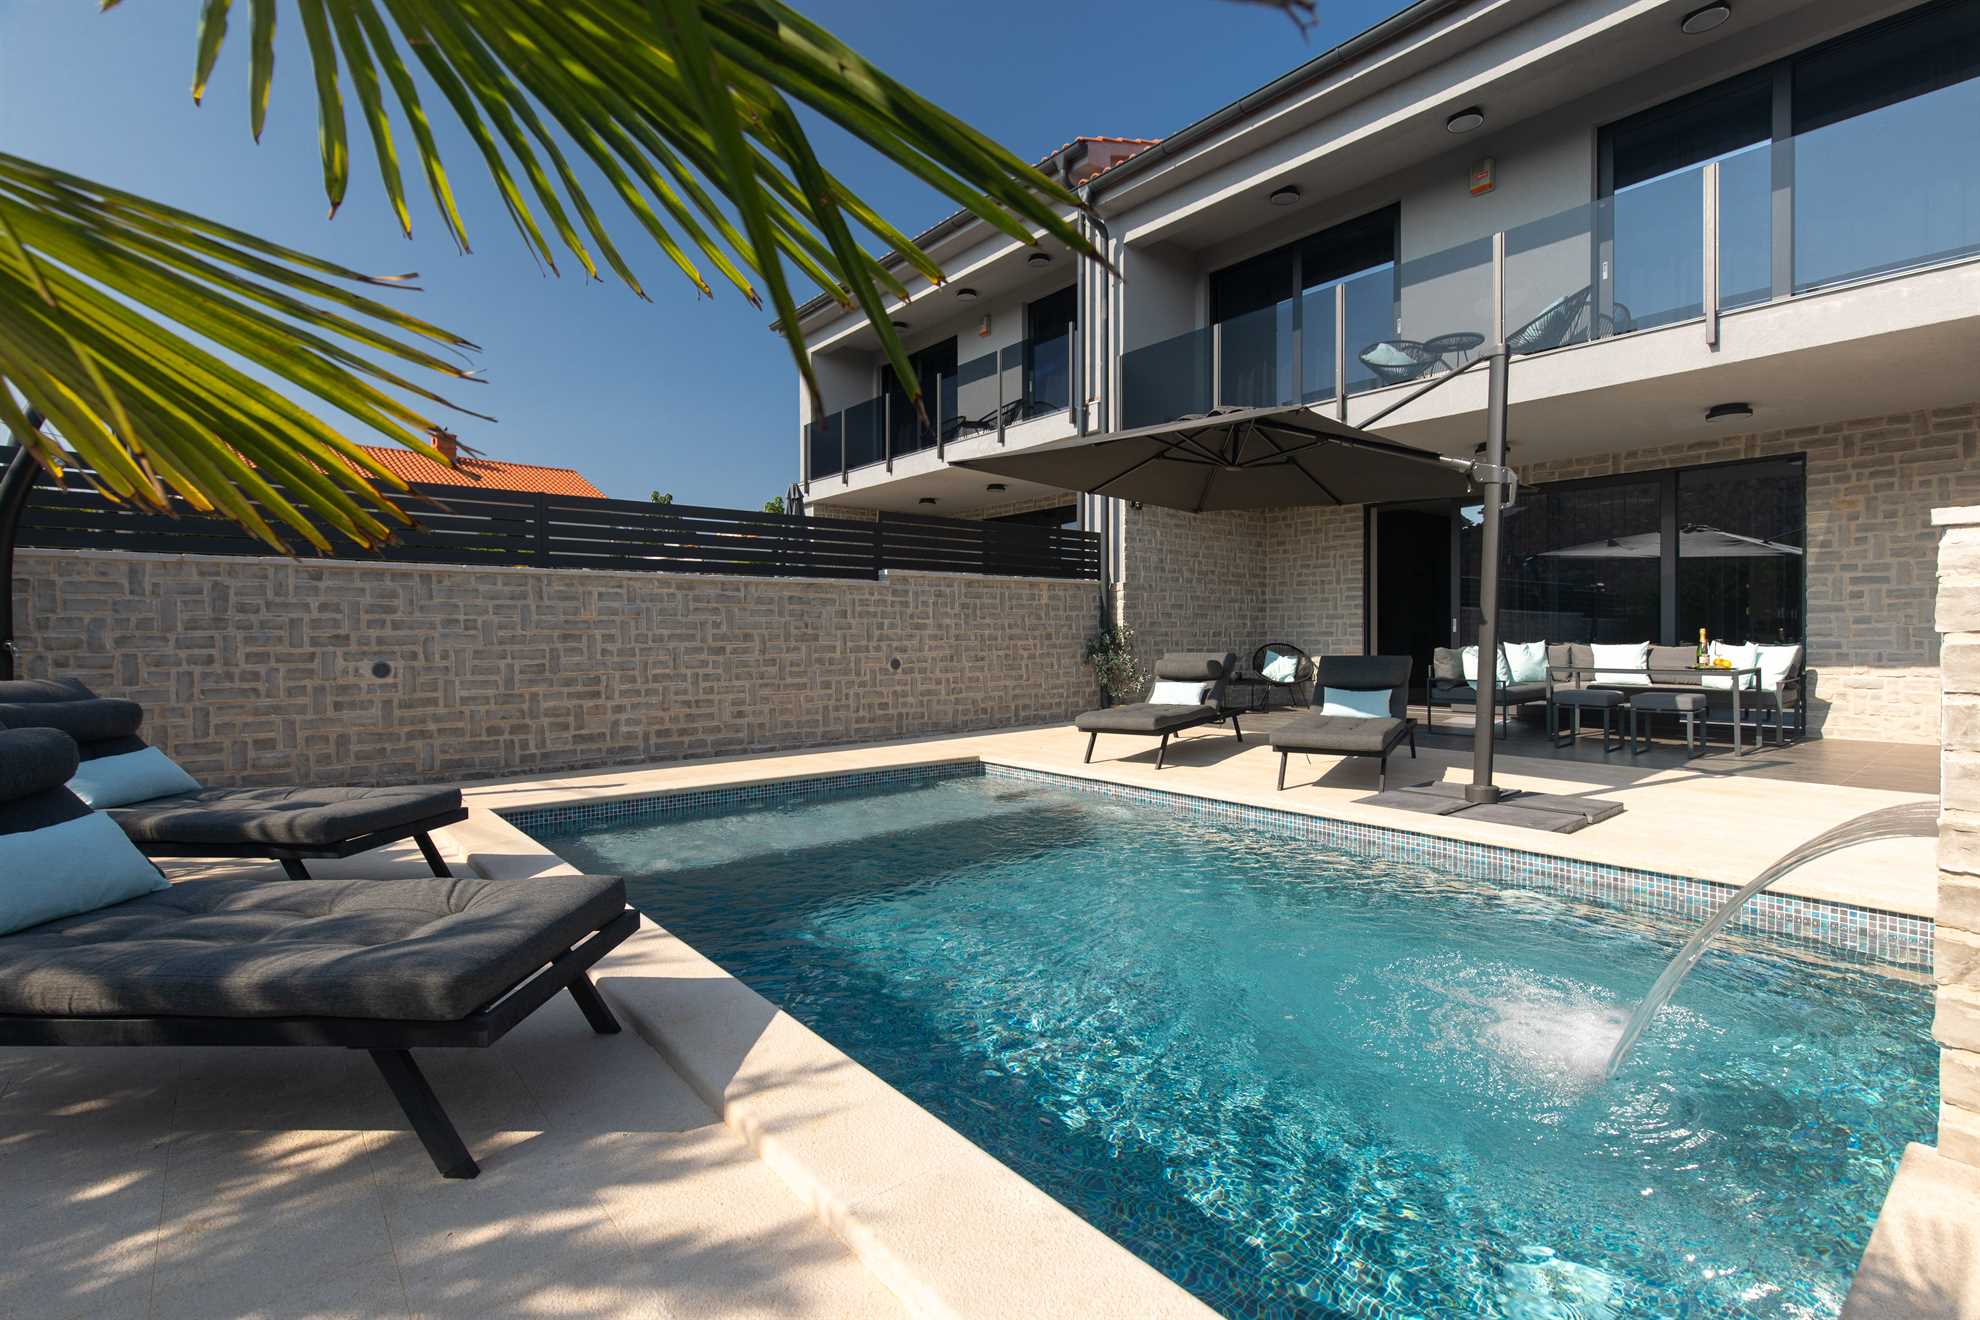 Modern Vila Melia with a pool and sunbeds